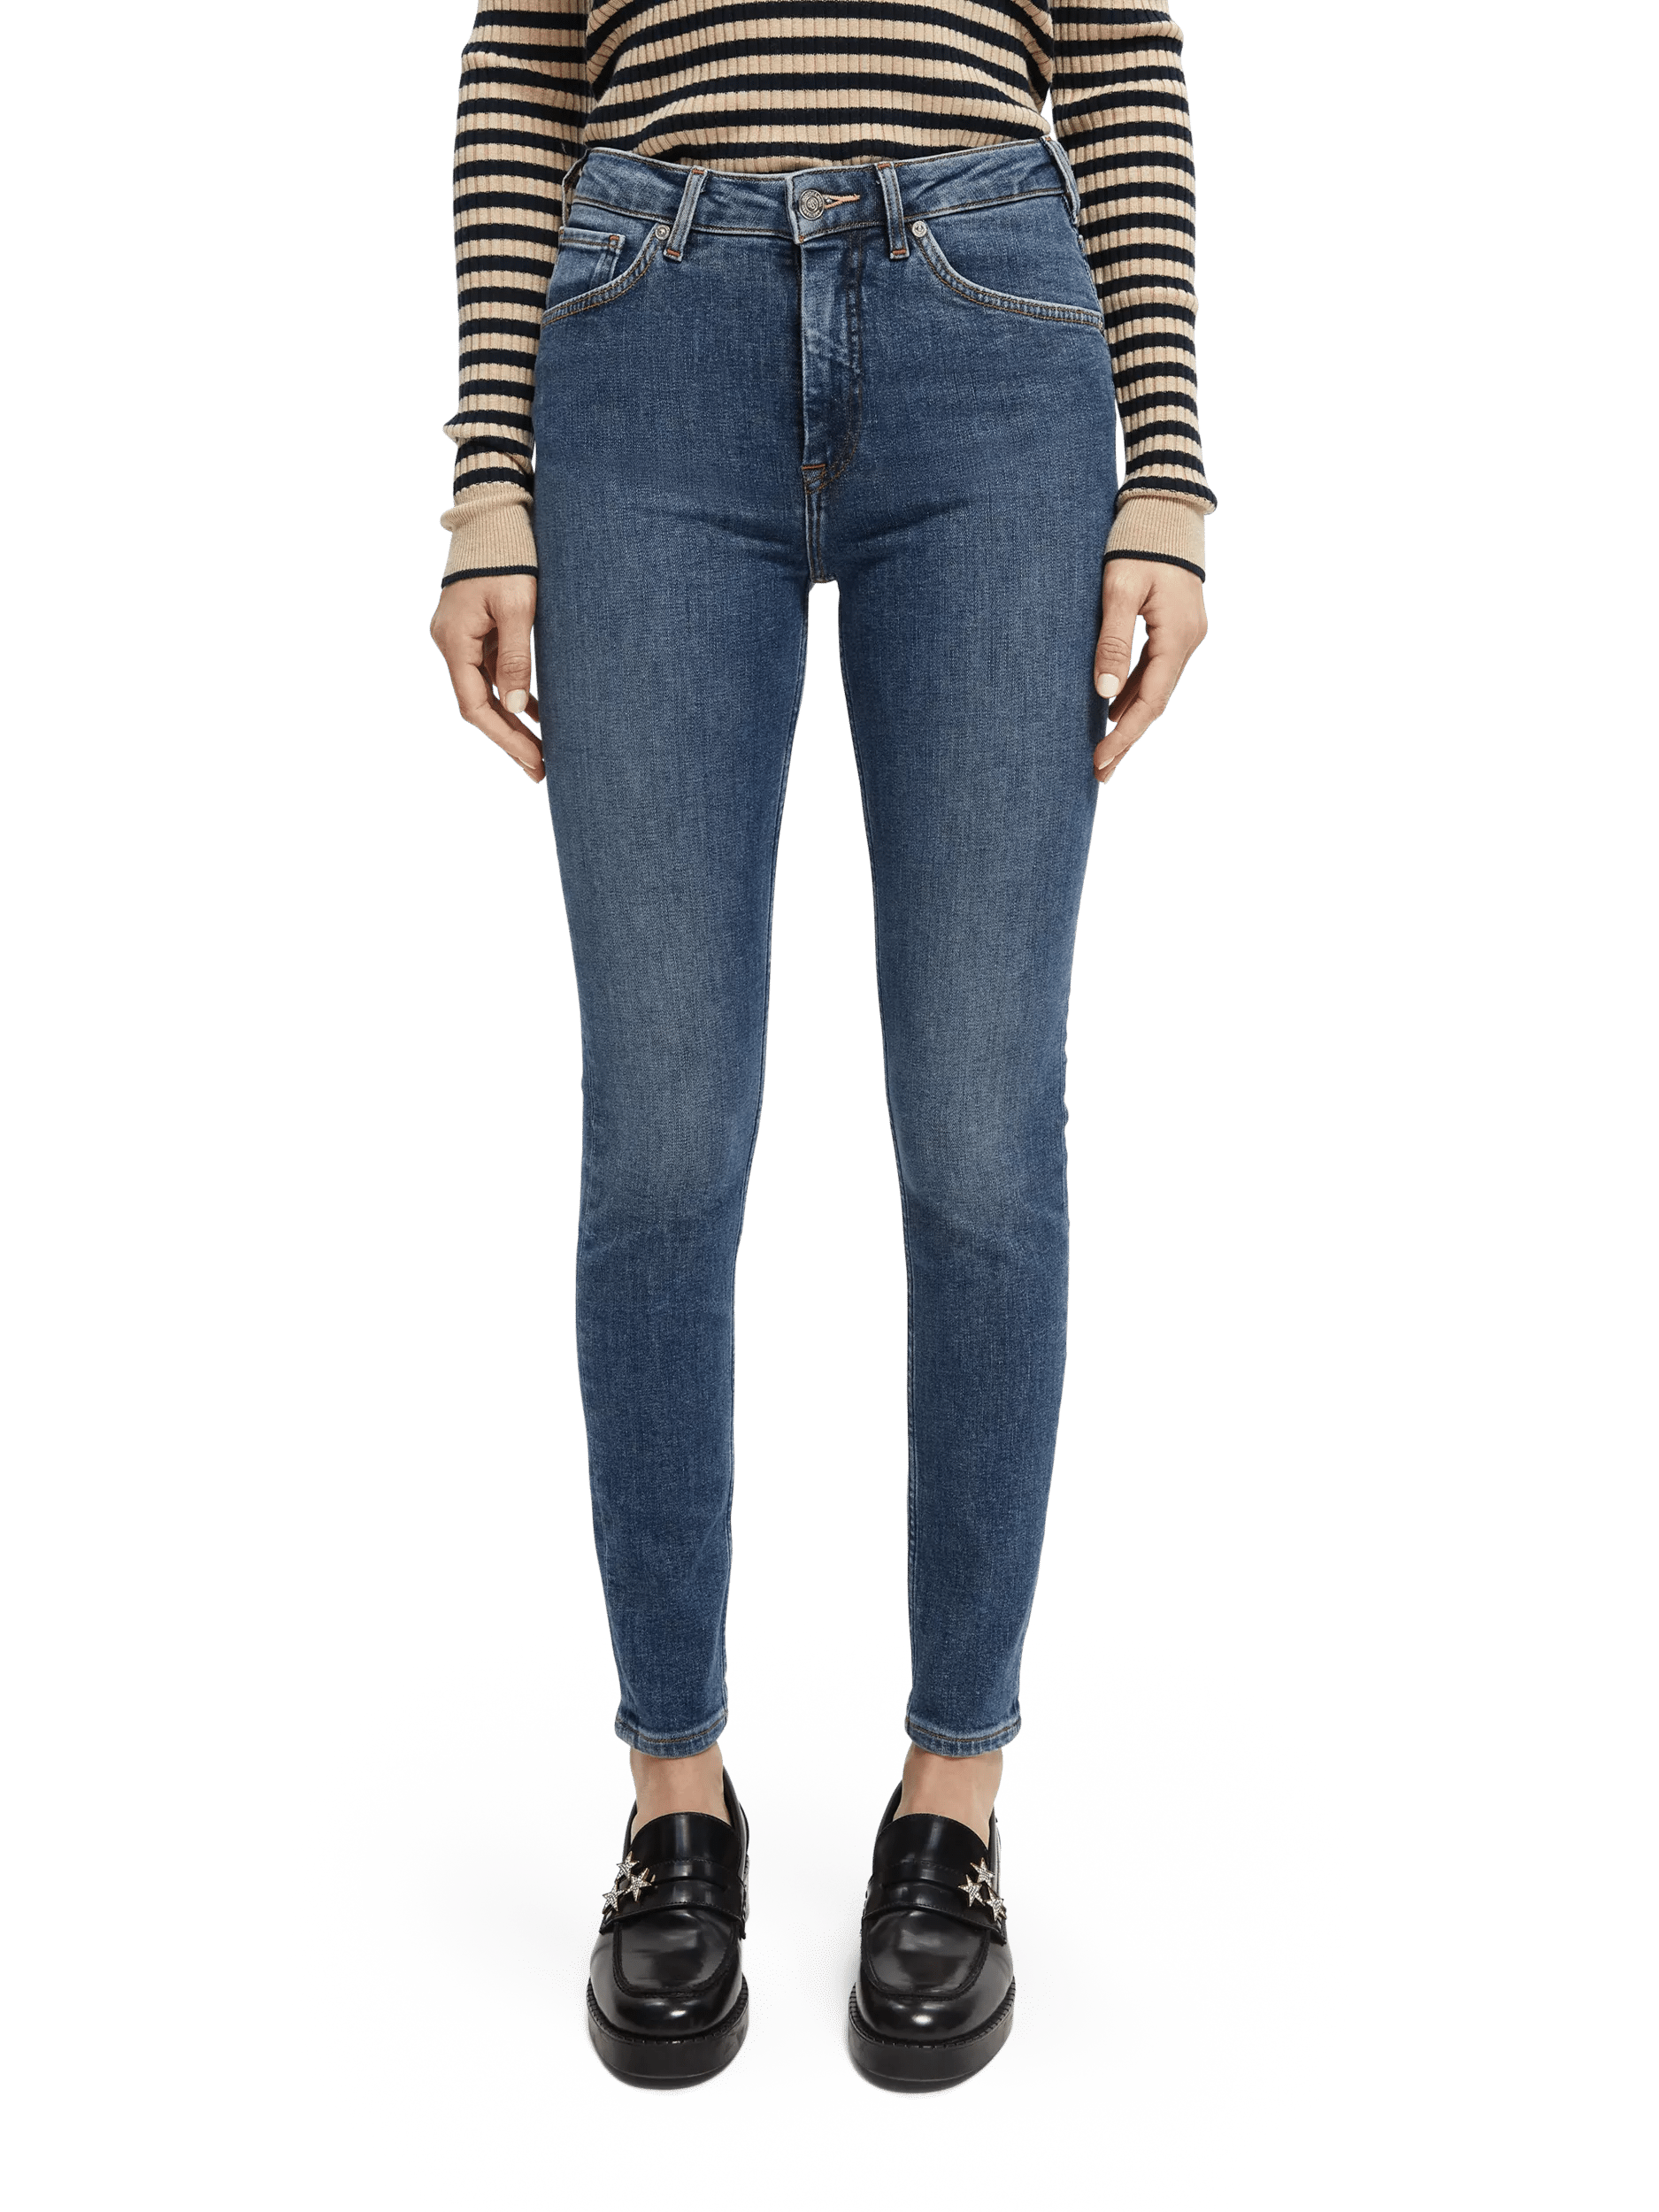 The Buzz boyfriend fit jeans